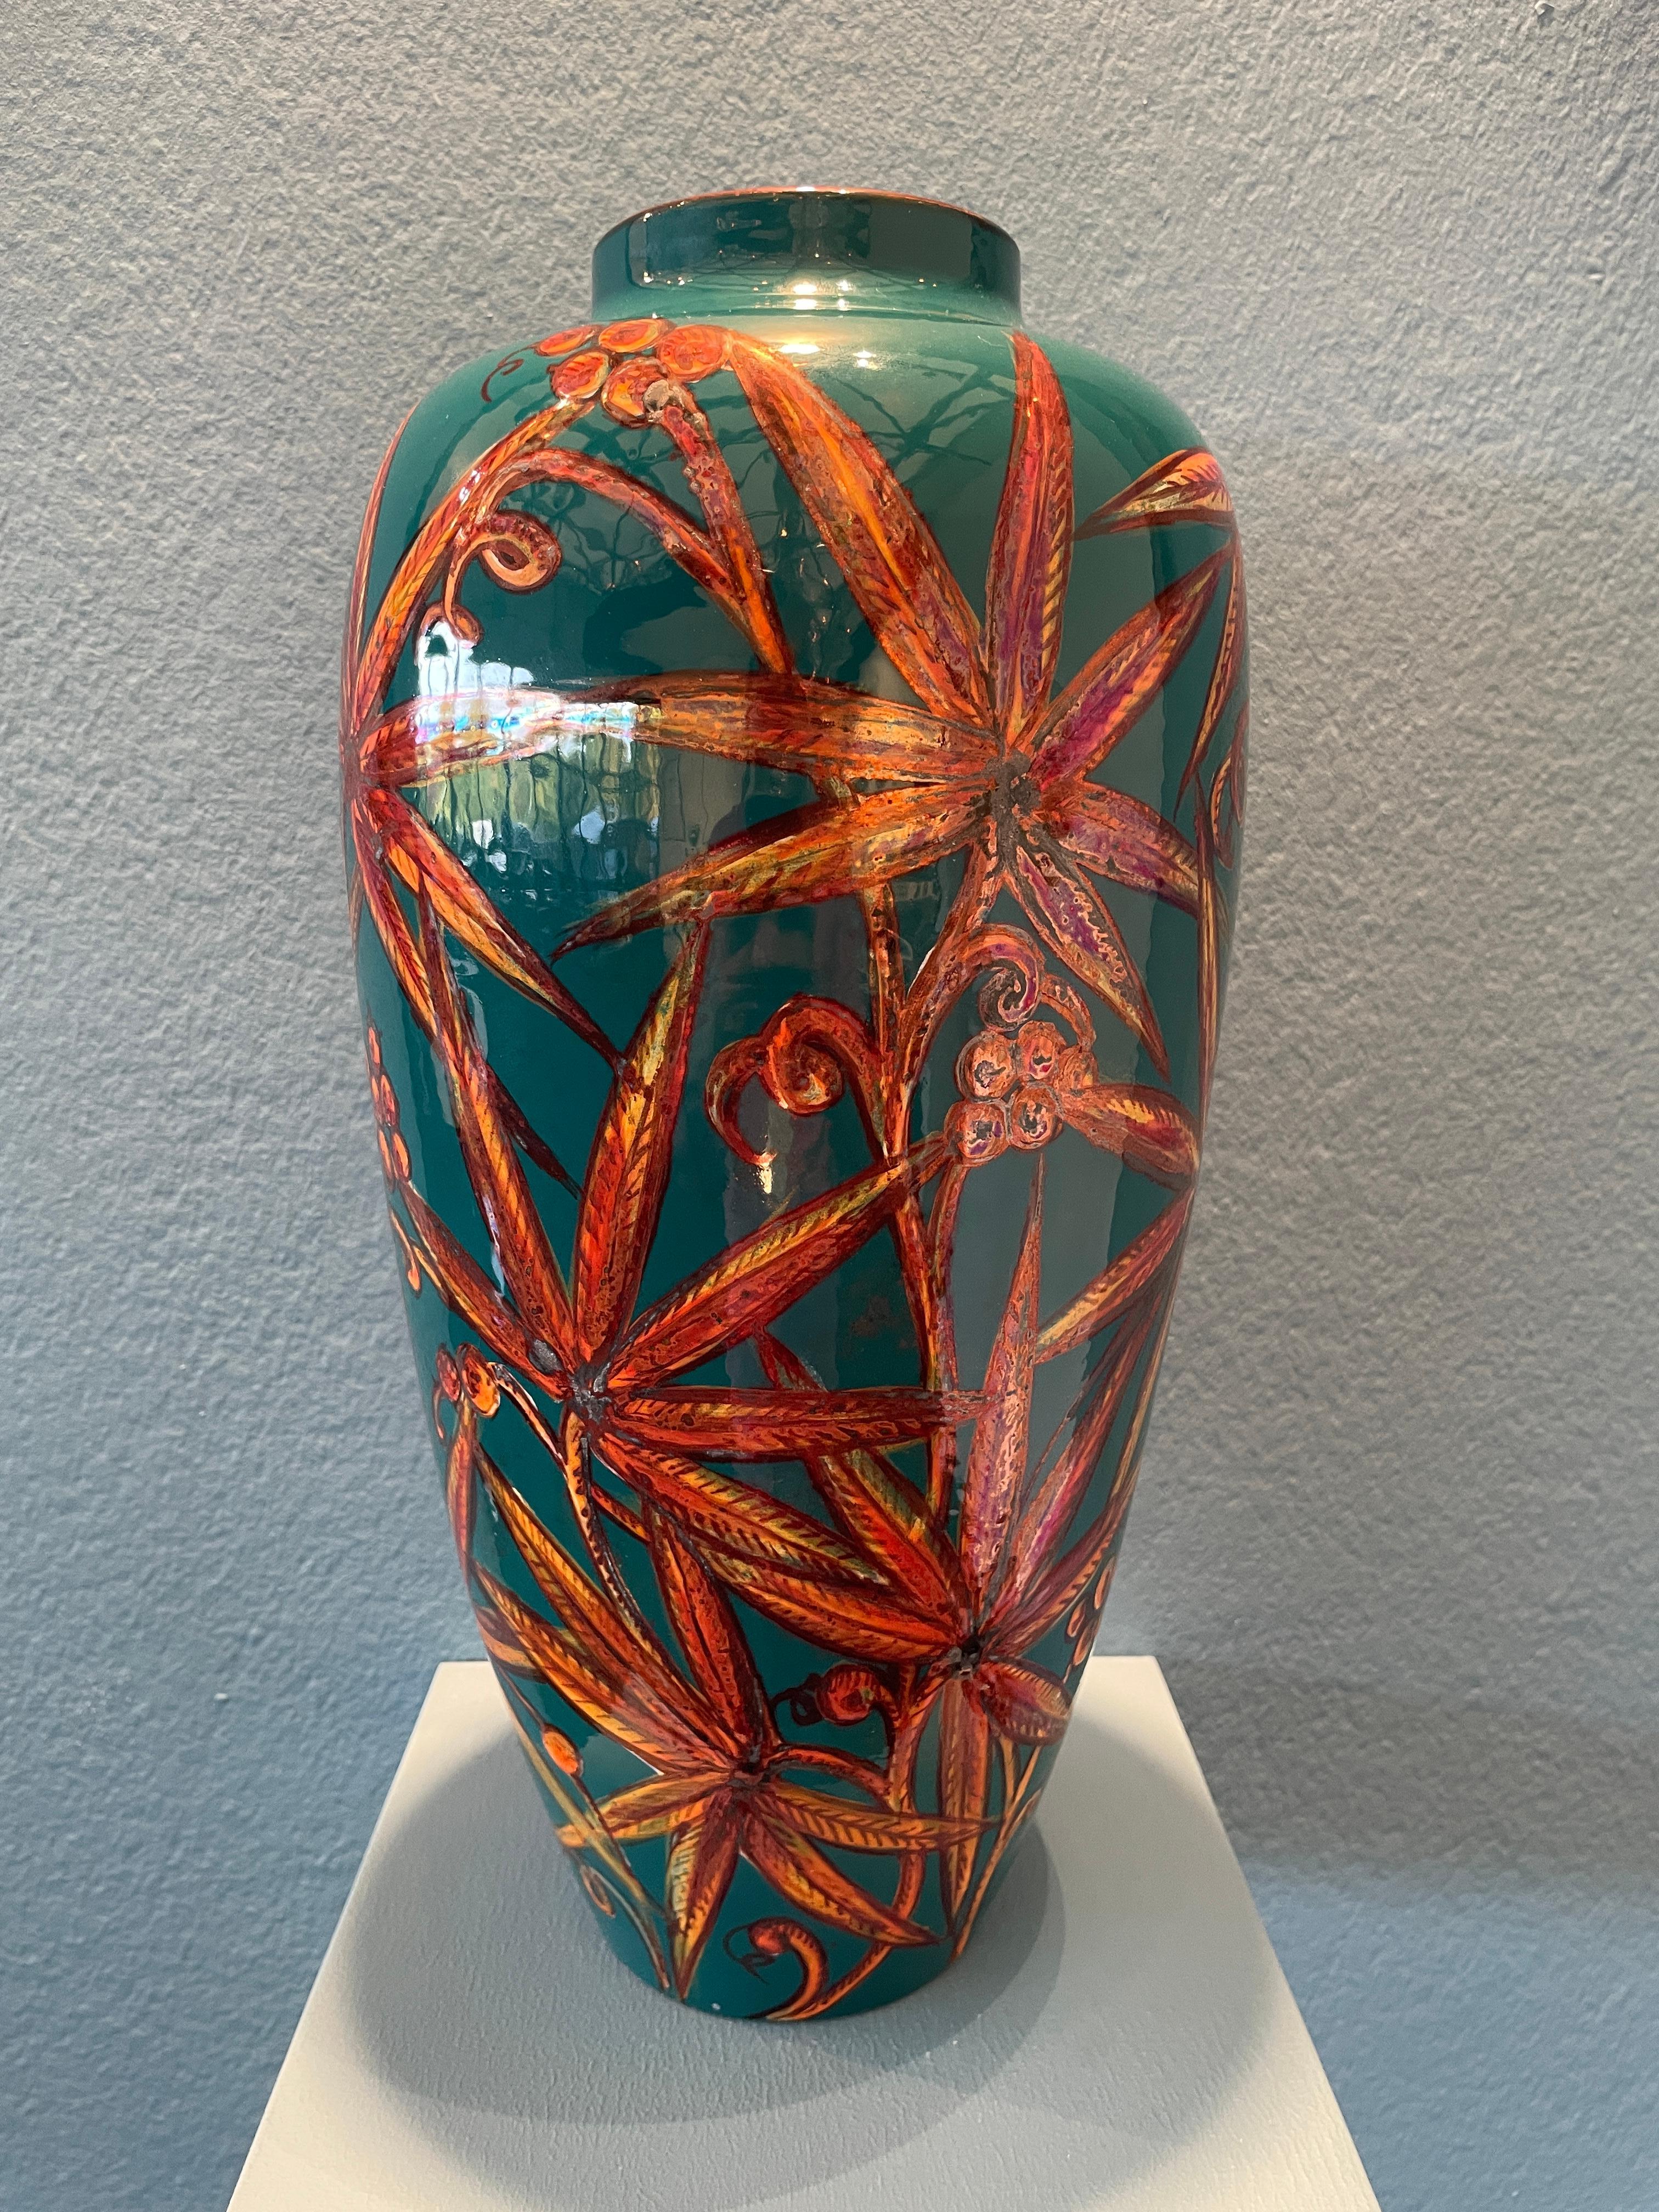 Bottega Vignoli, Vase mit Blumendekor, 2022 handbemaltes Majolika, 17cm x 37cm hoch. Einzigartiges Stück. Vom Jugendstil inspiriertes Blumendekor.

Bottega Vignoli ist eine Marke für Kunstkeramik mit Sitz in Faenza, einem der repräsentativsten